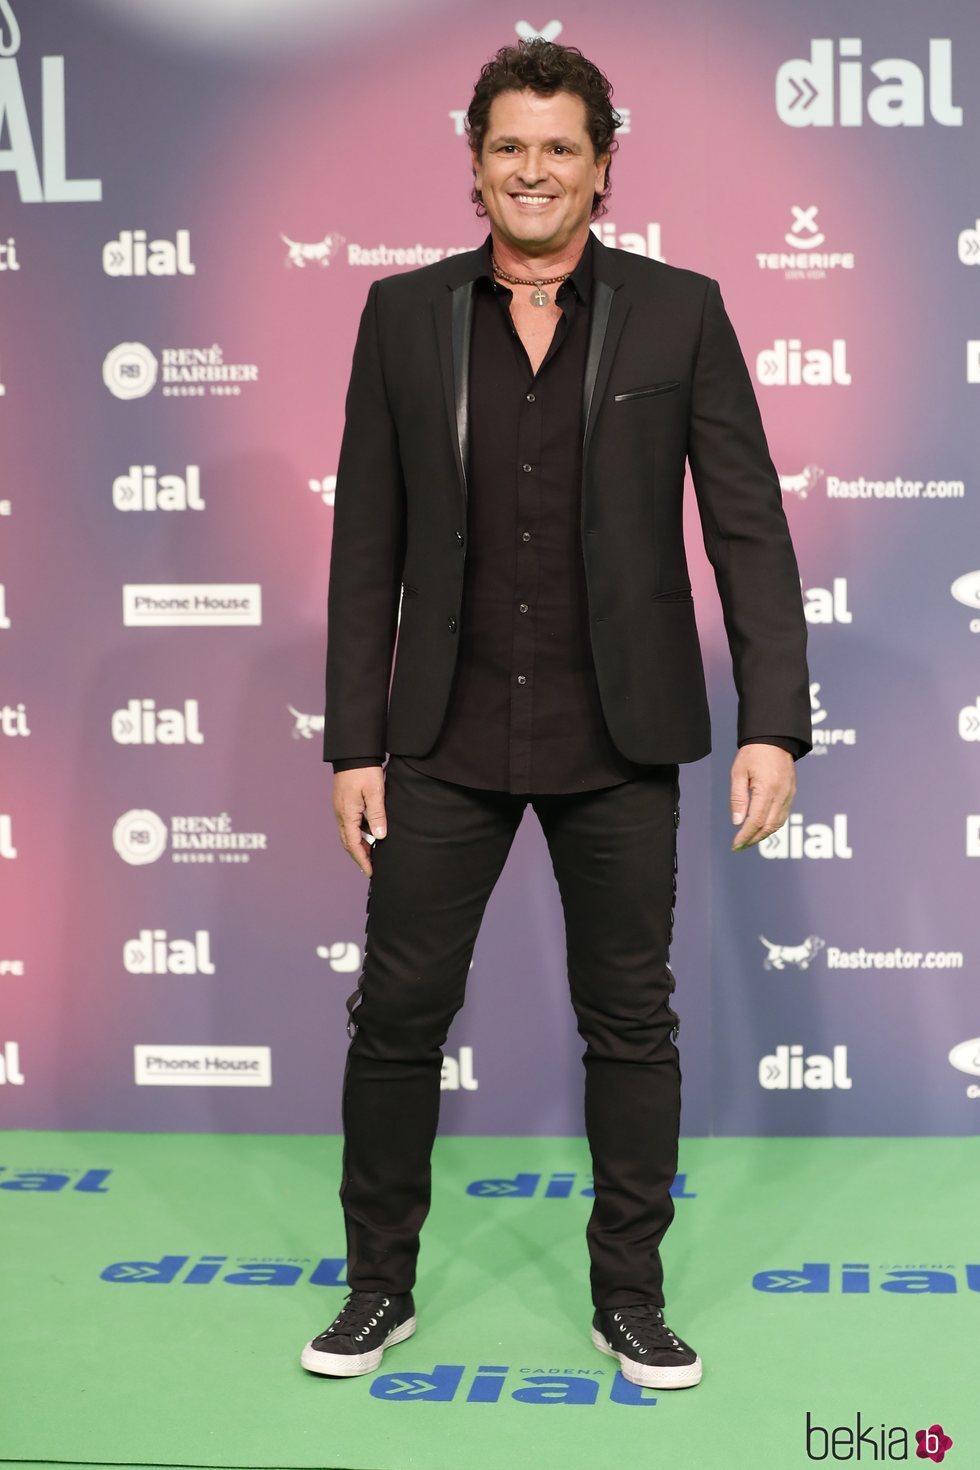 Carlos Vives en los Premios Cadena Dial 2018